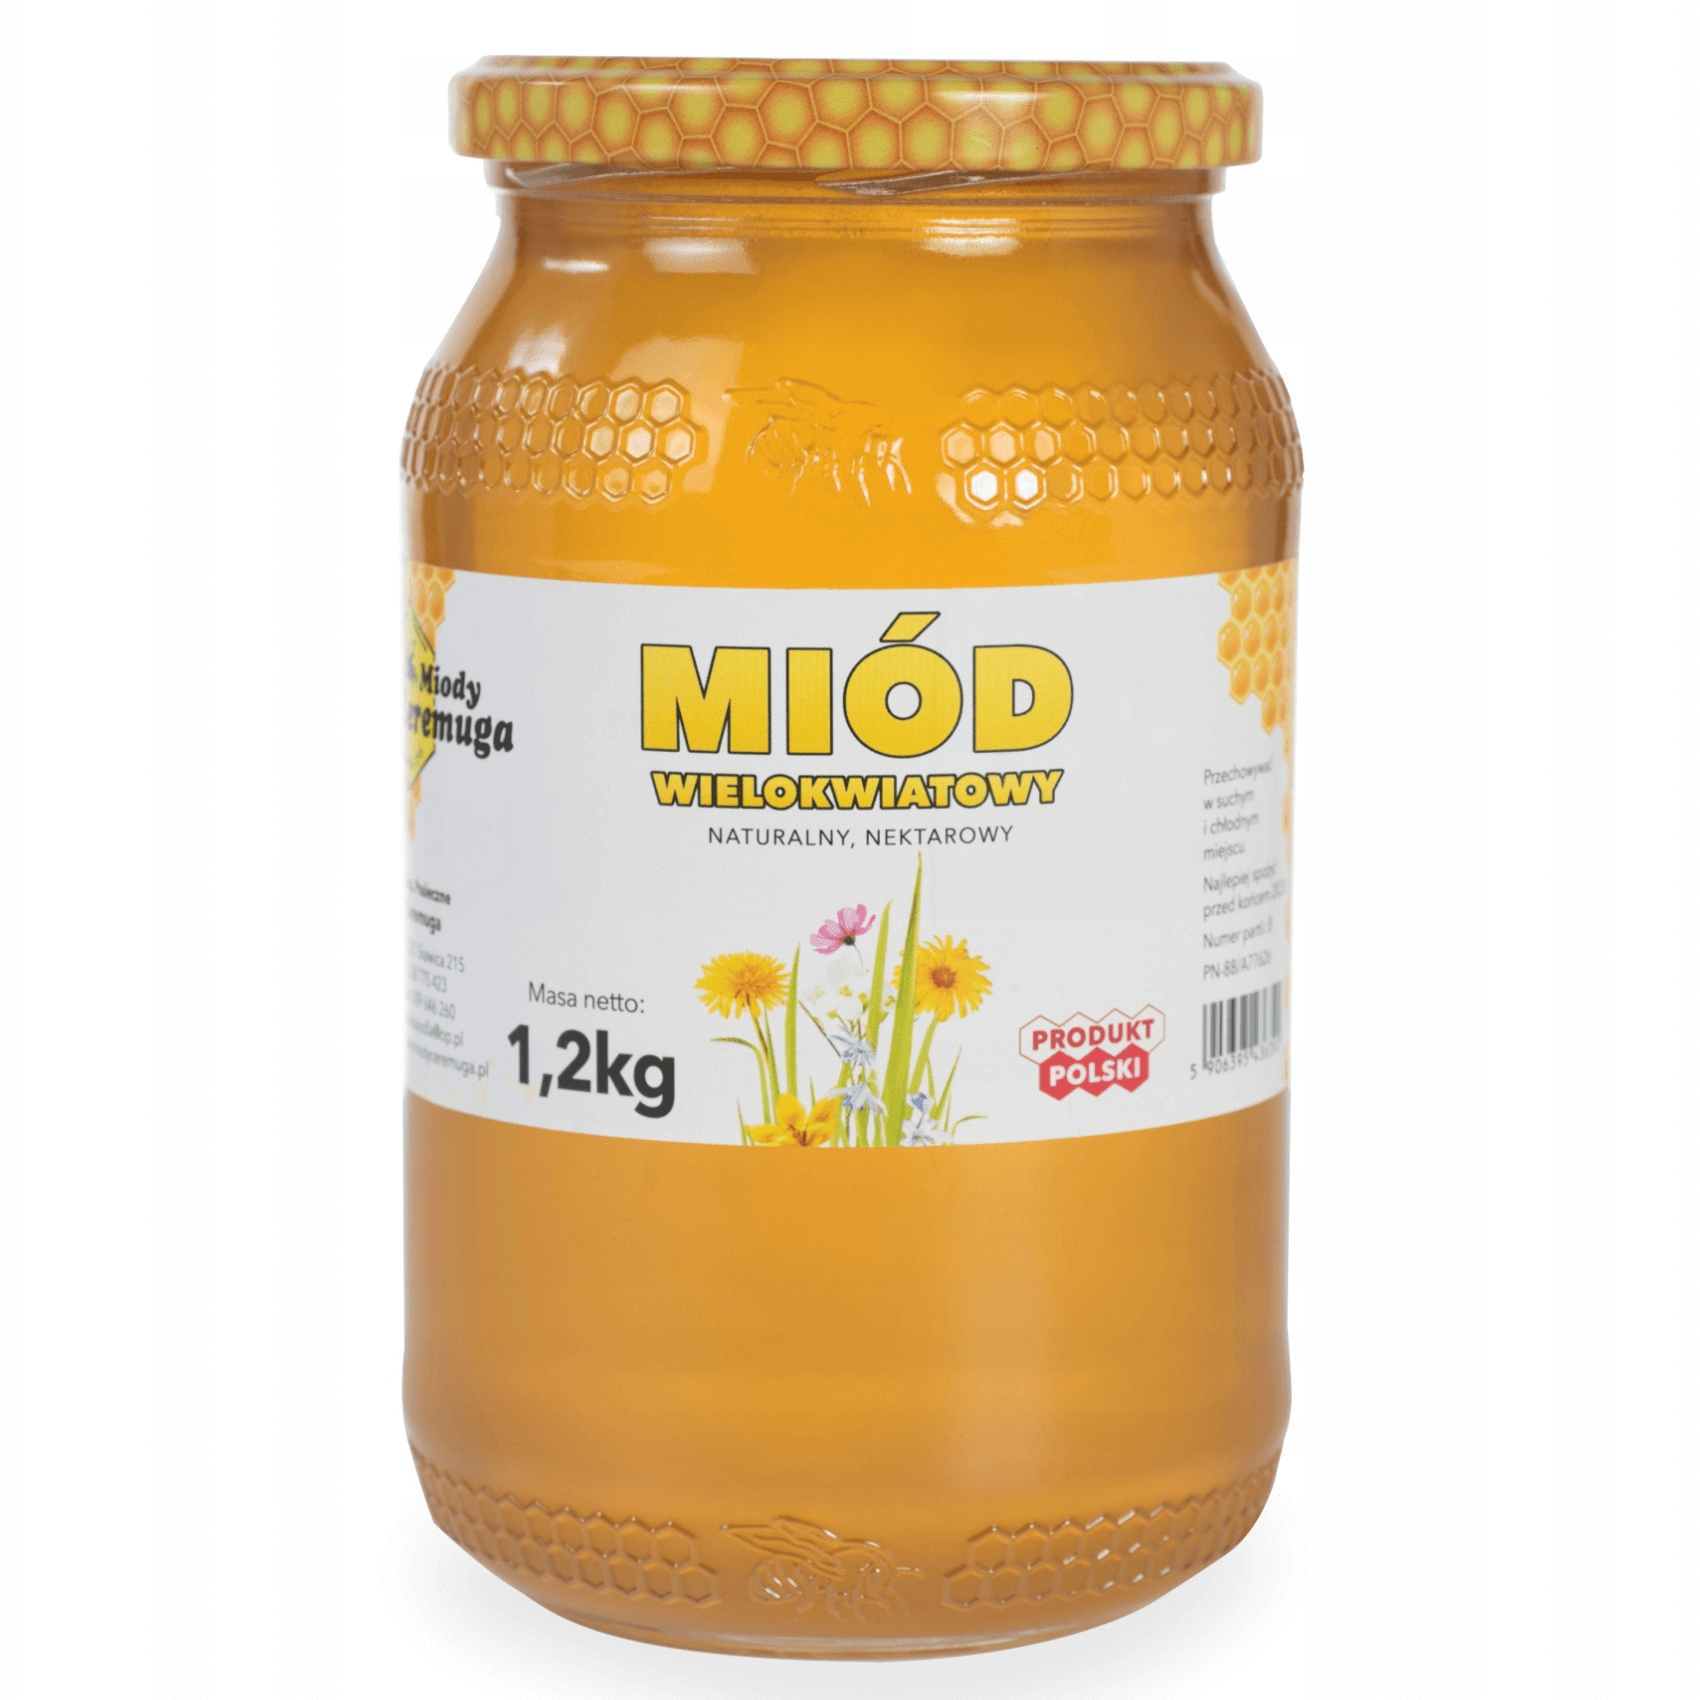 Miód wielokwiatowy 1,2 kg - Miody Ceremuga